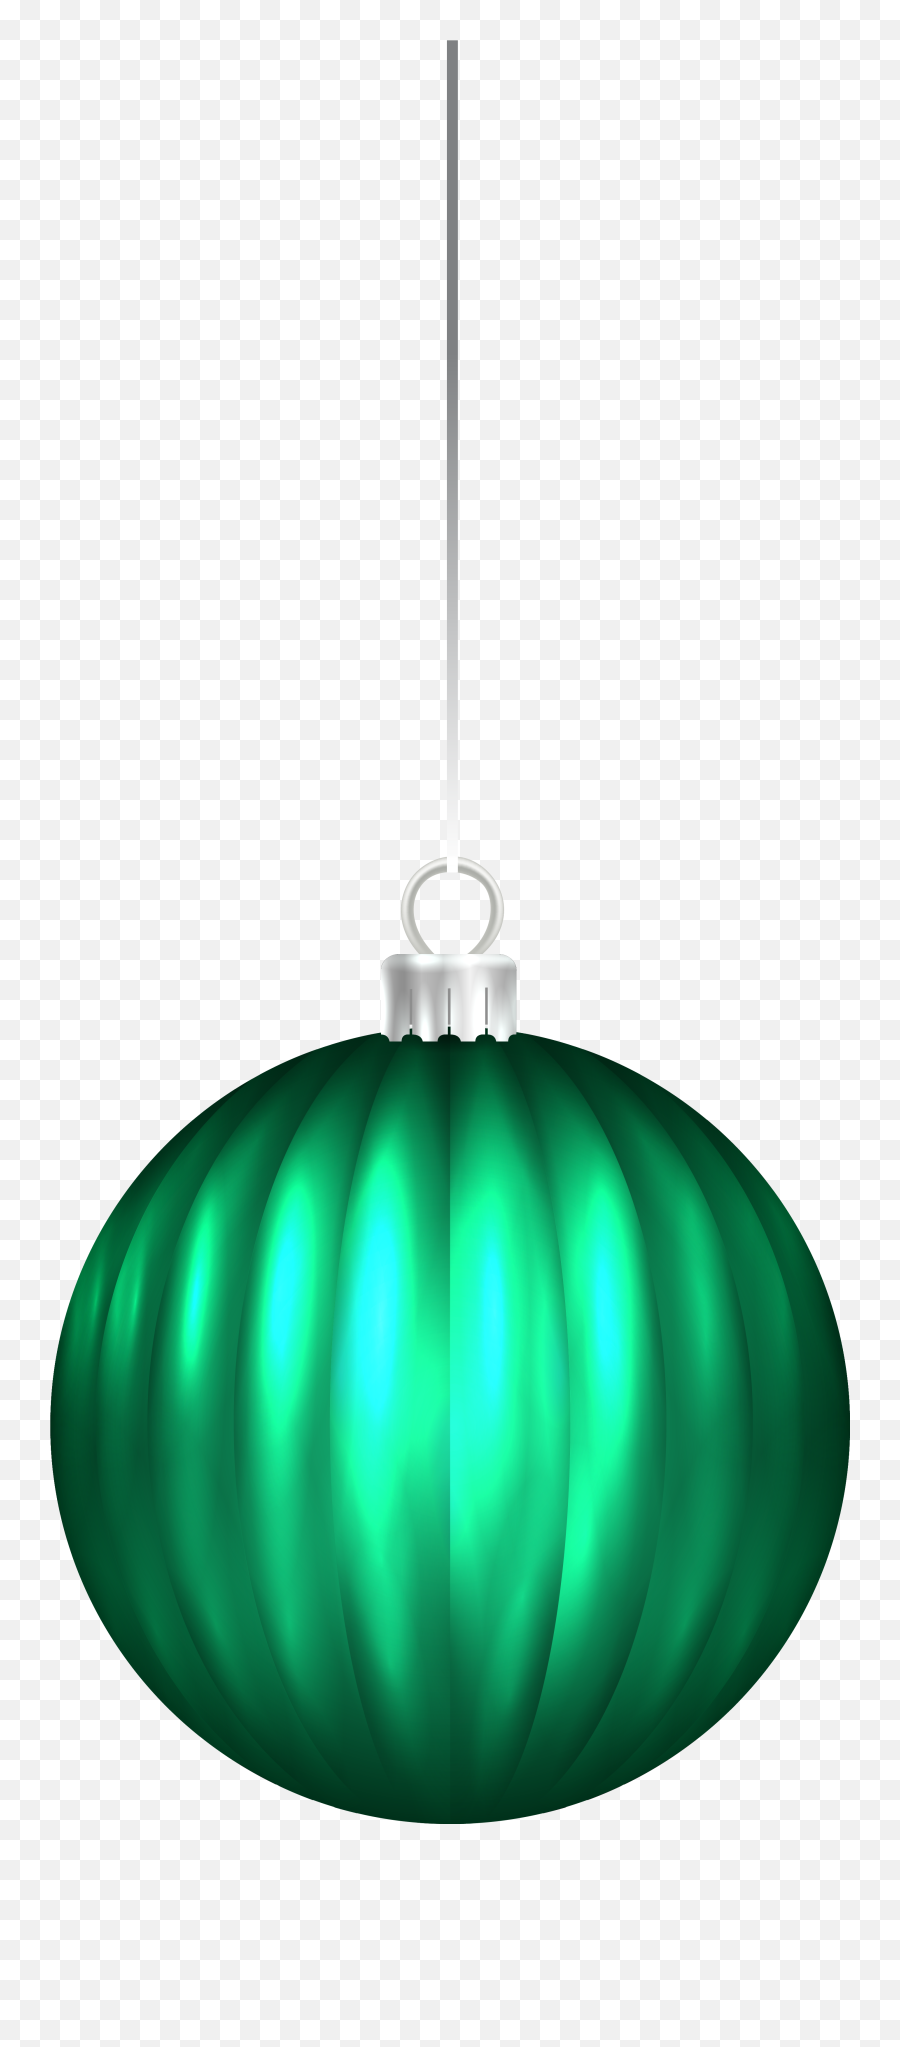 Light Teal Snowflake Png Freeuse - Christmas Ornament,Ball Of Light Png